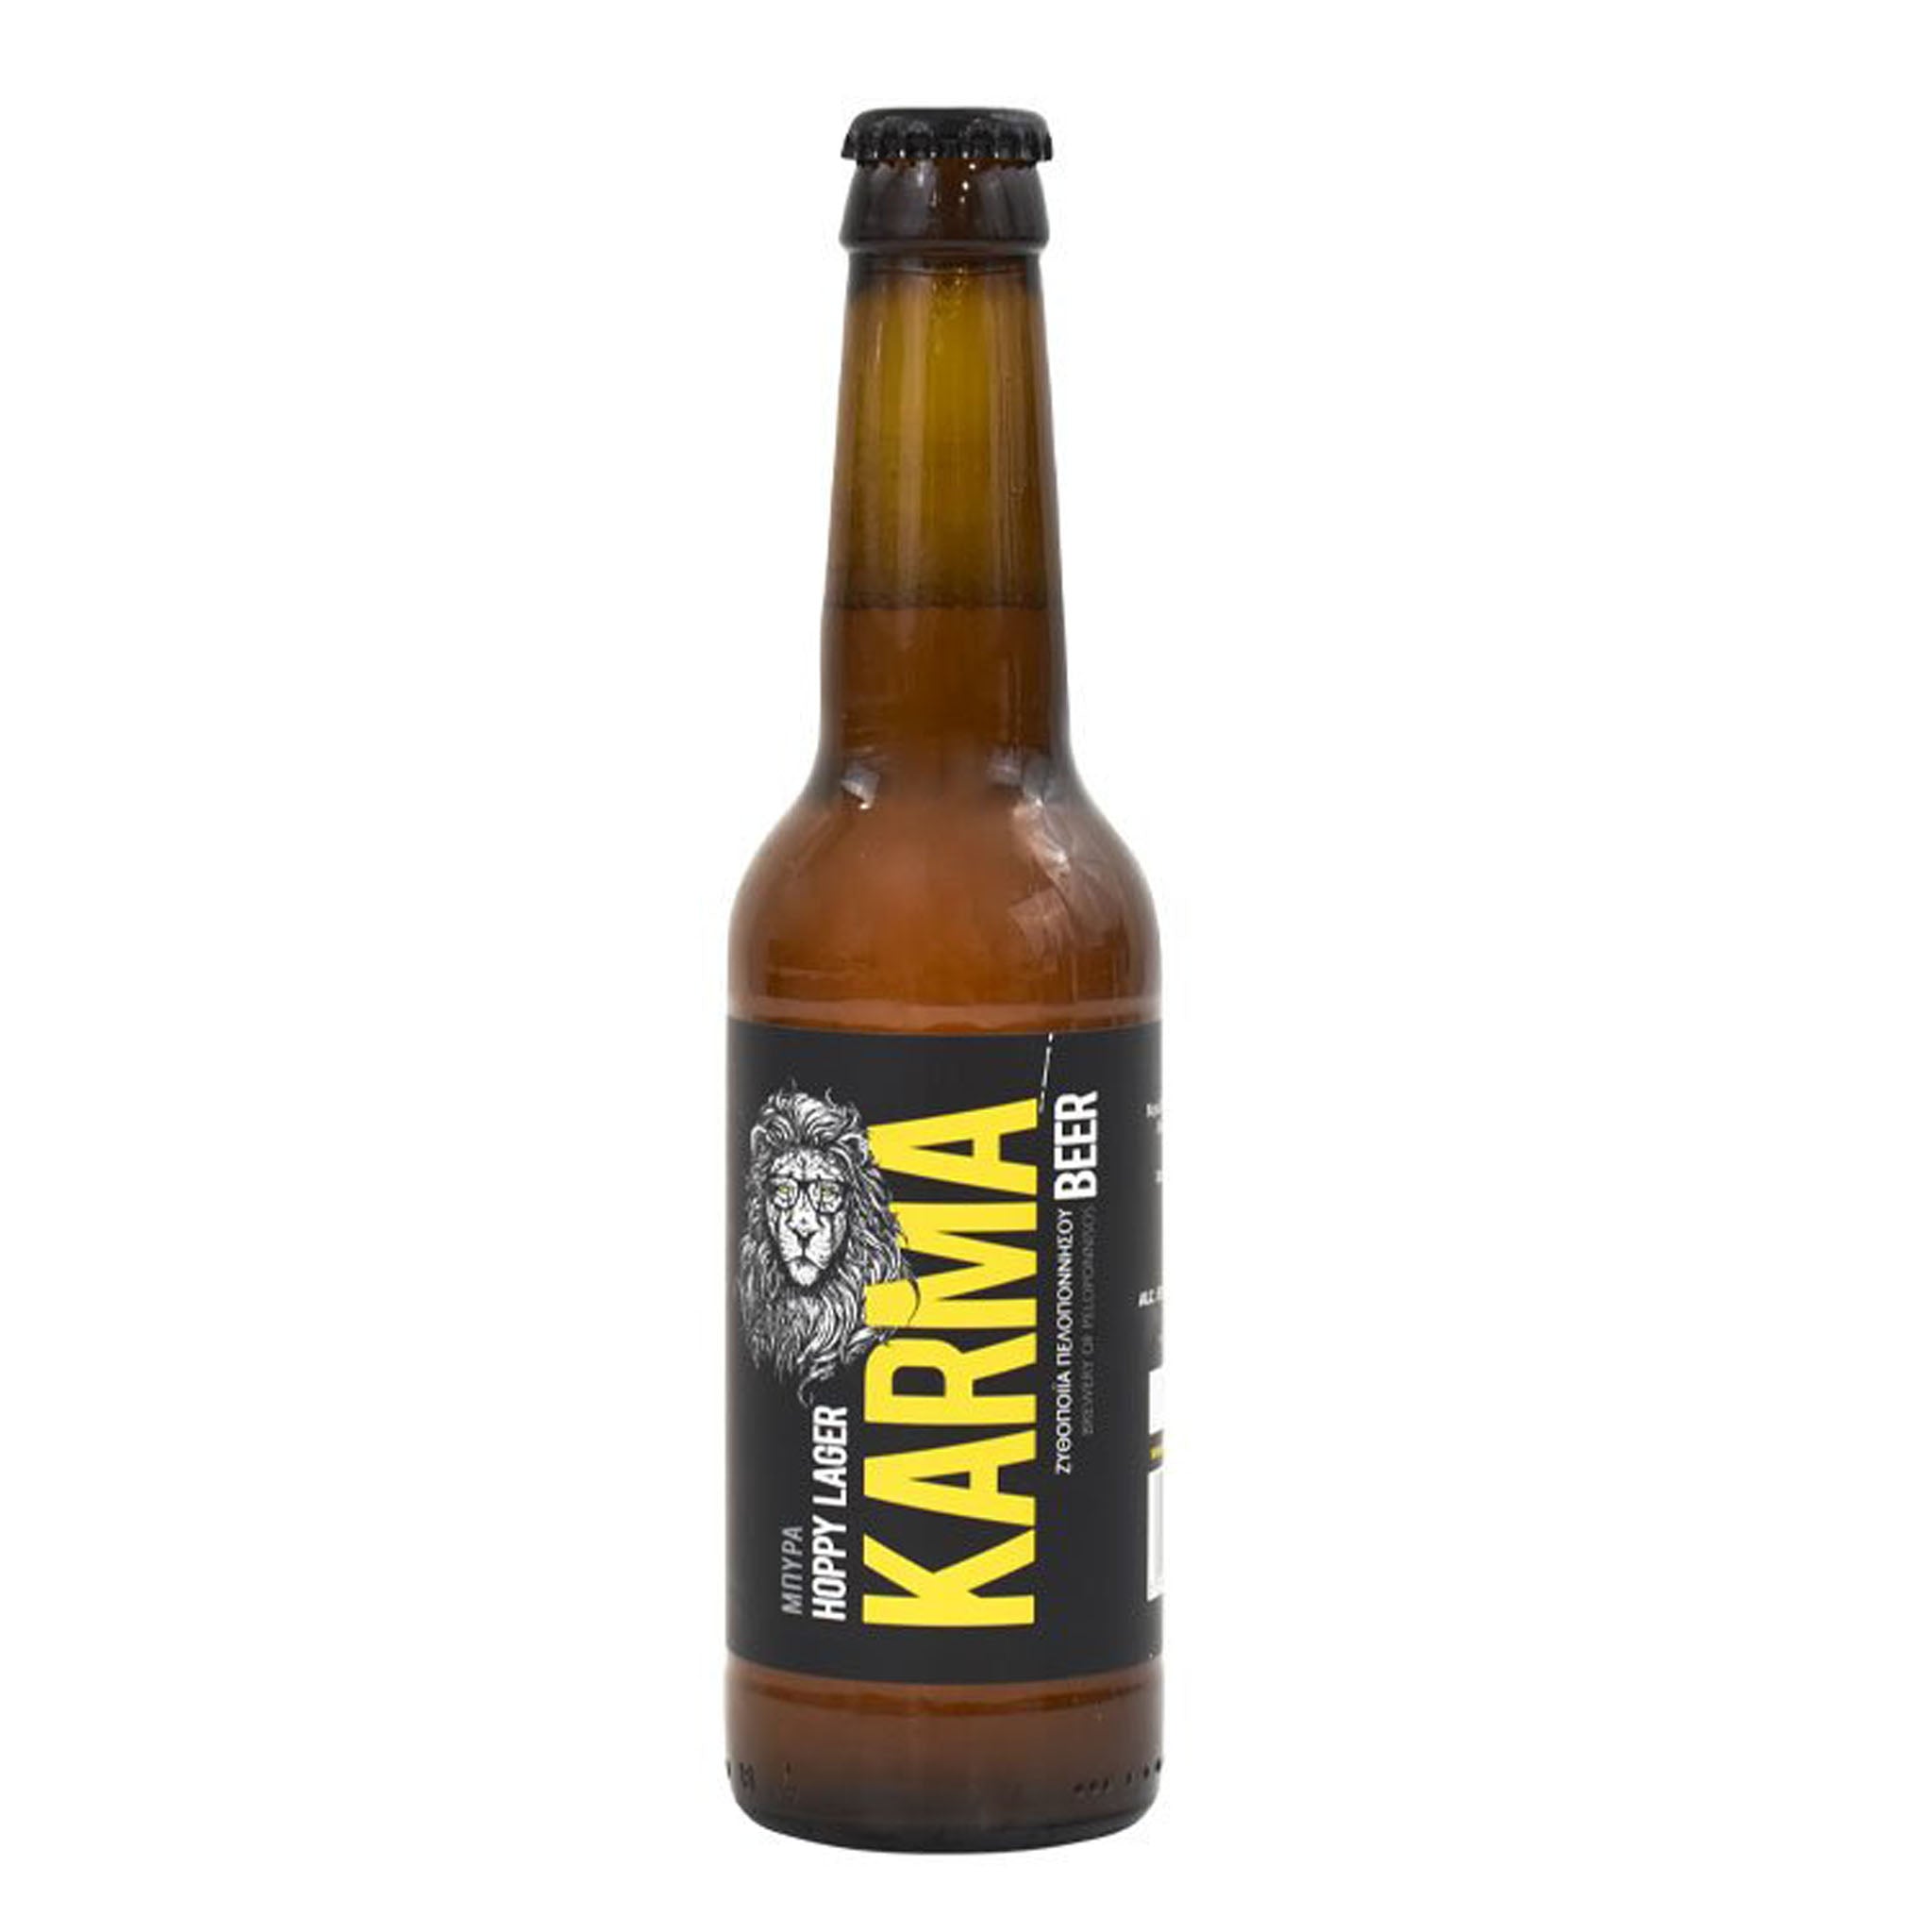 Karma Hoppy Lager Beer 33cl x12 bottles